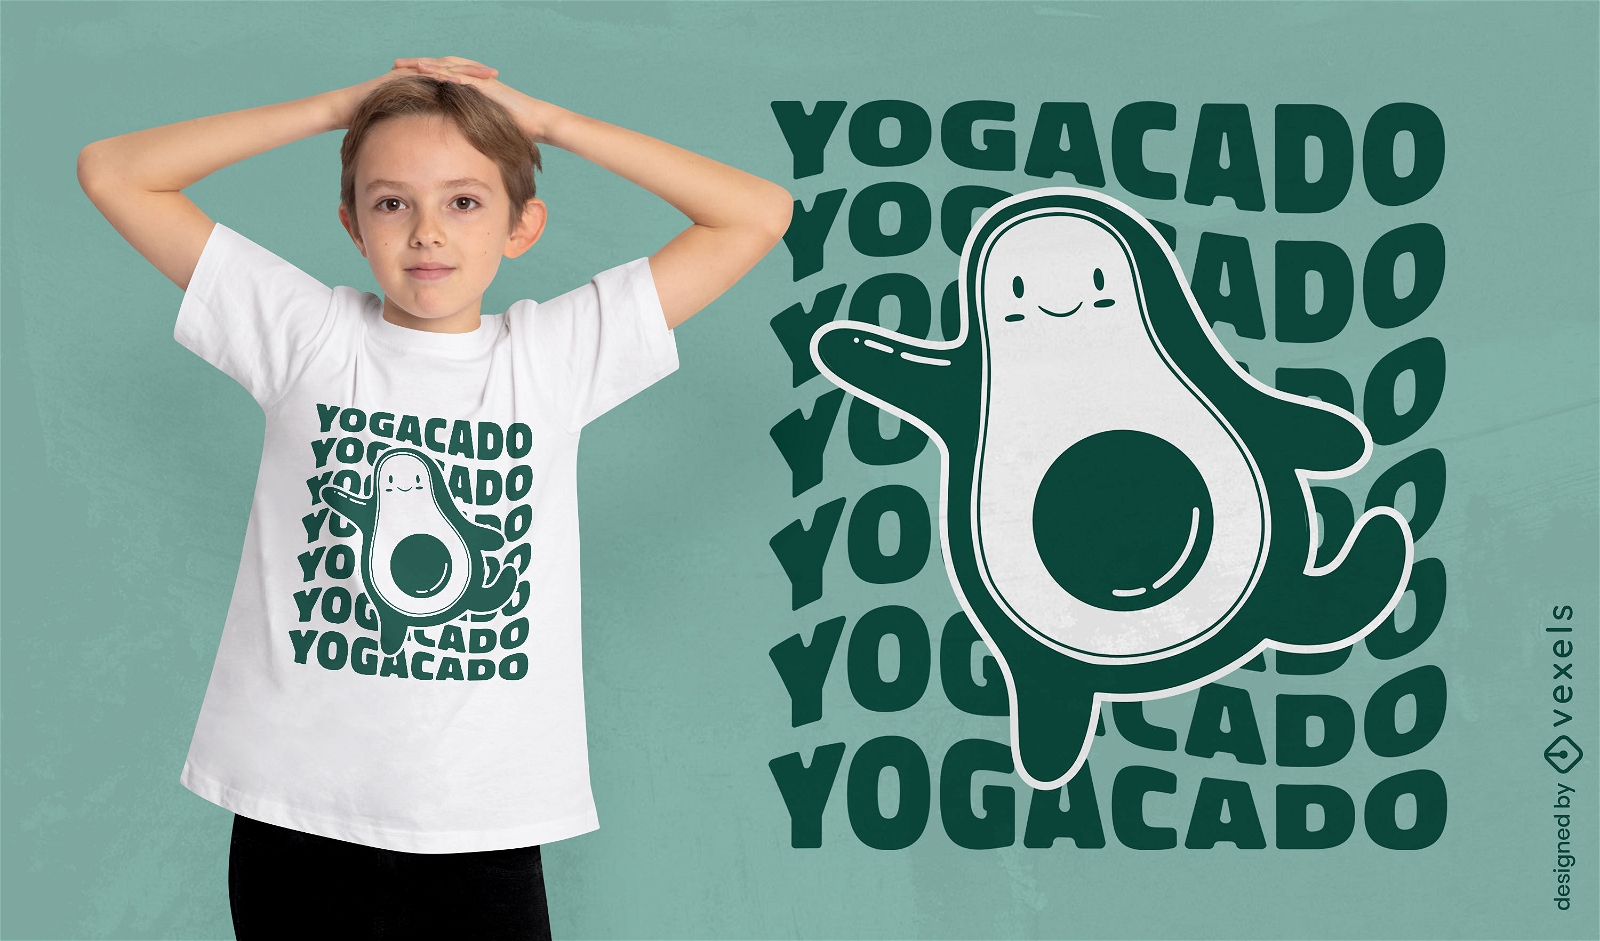 Yogacado-Yoga-Avocado-T-Shirt-Design